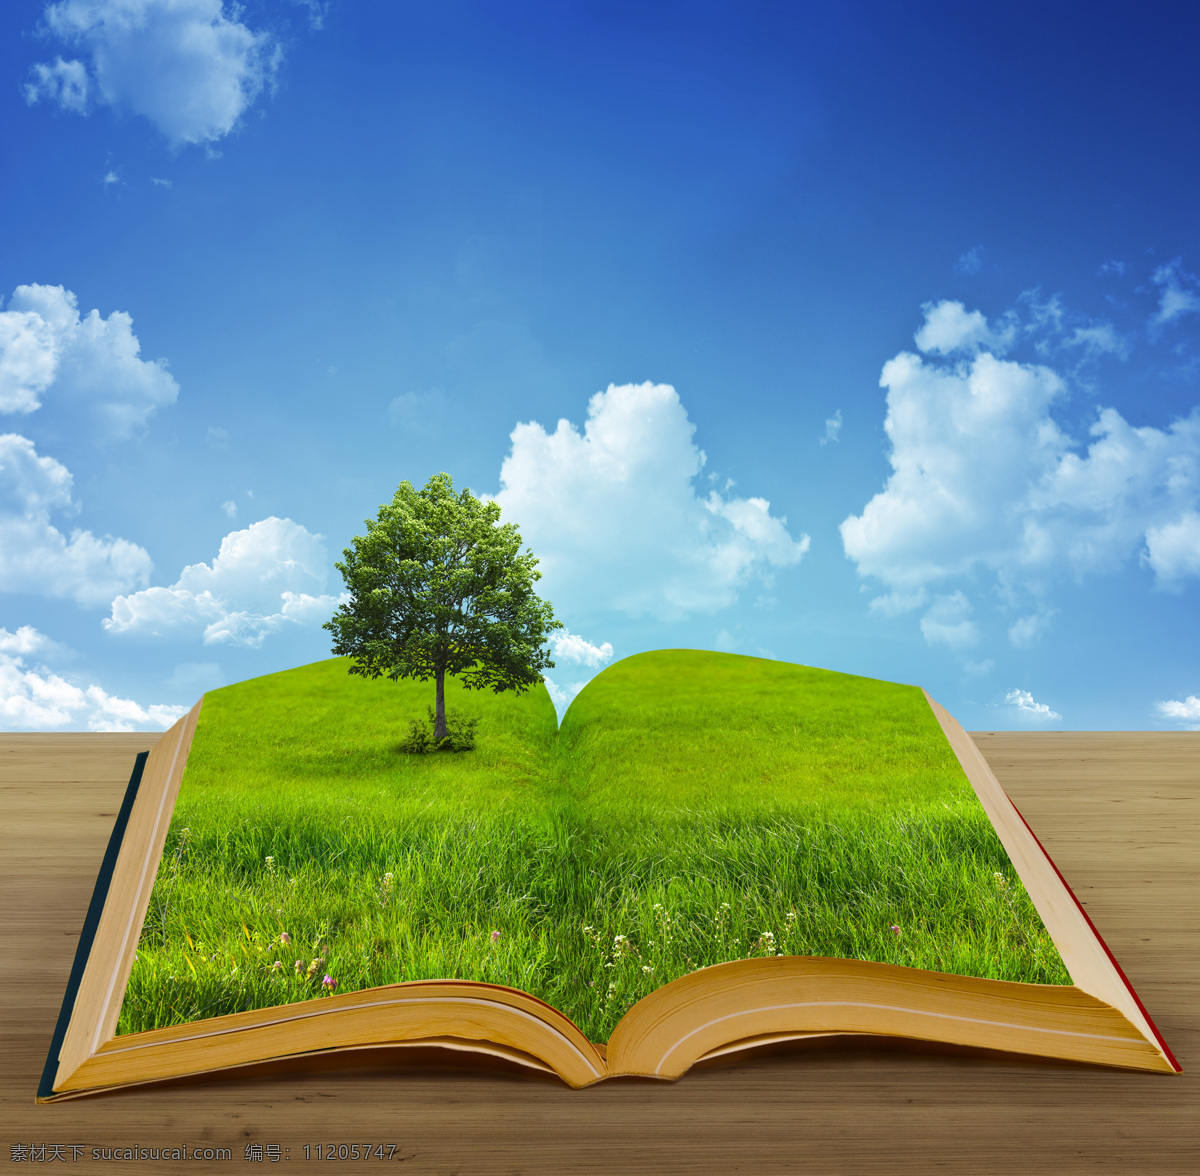 绿色环保 高清图片 jpg图库 绿化素材 一本书 蓝天 树 草地 木纹 环保图片 风景图片